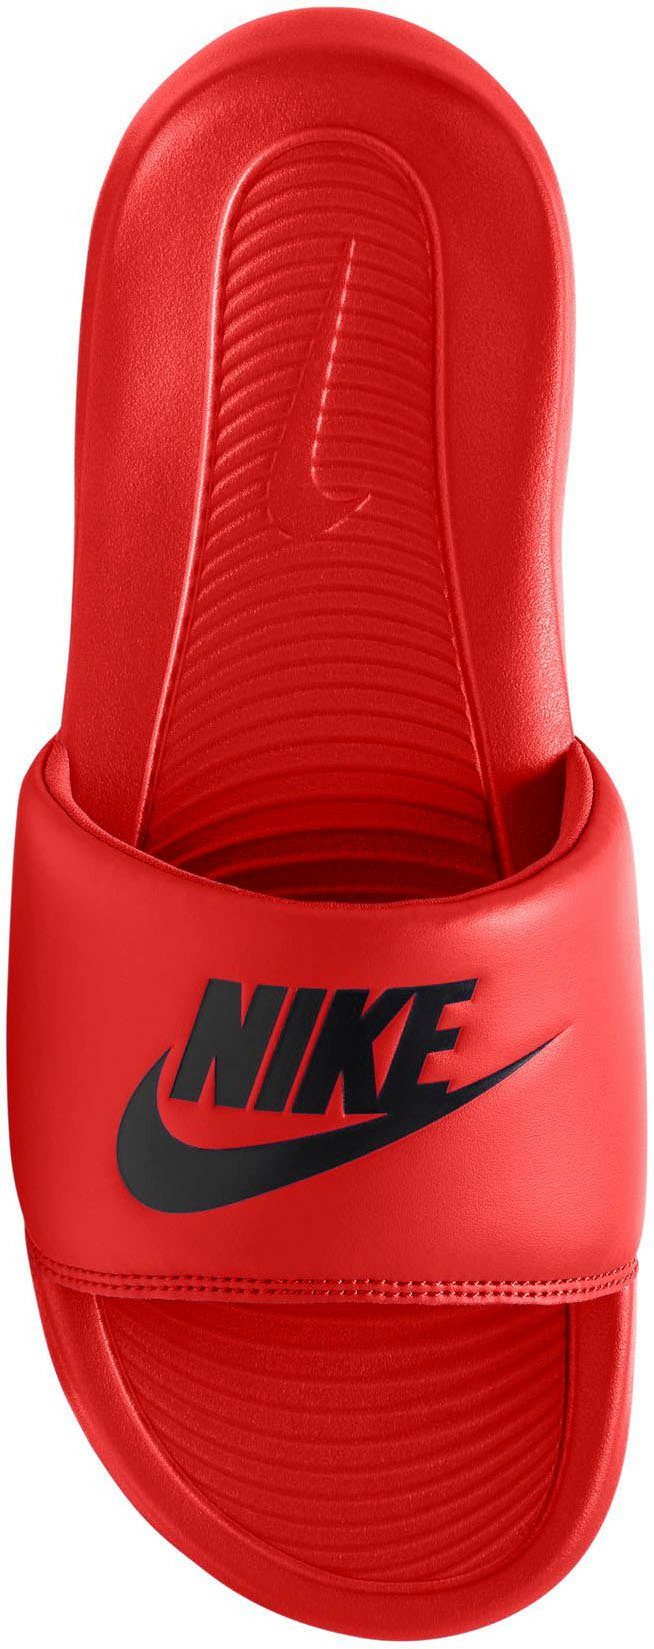 Badesandale rot VICTORI Sportswear ONE Nike